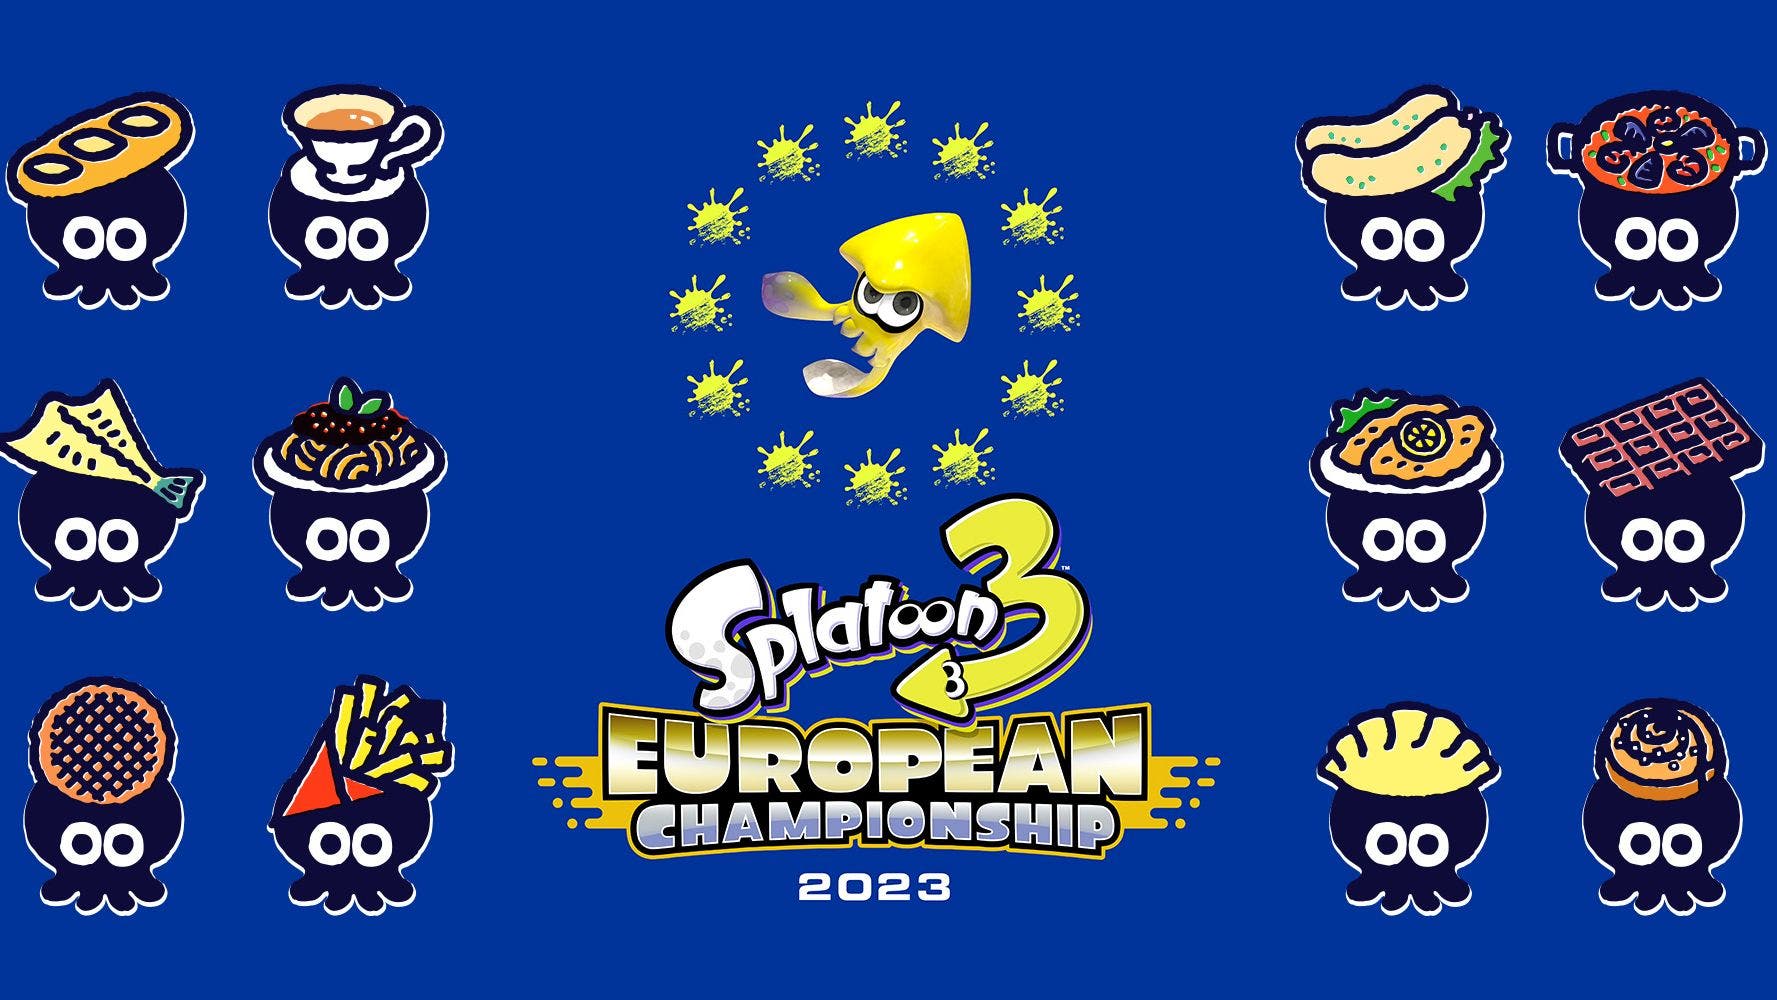 Nintendo anuncia el Splatoon 3 European Championship 2023 para encontrar al mejor equipo de Europa